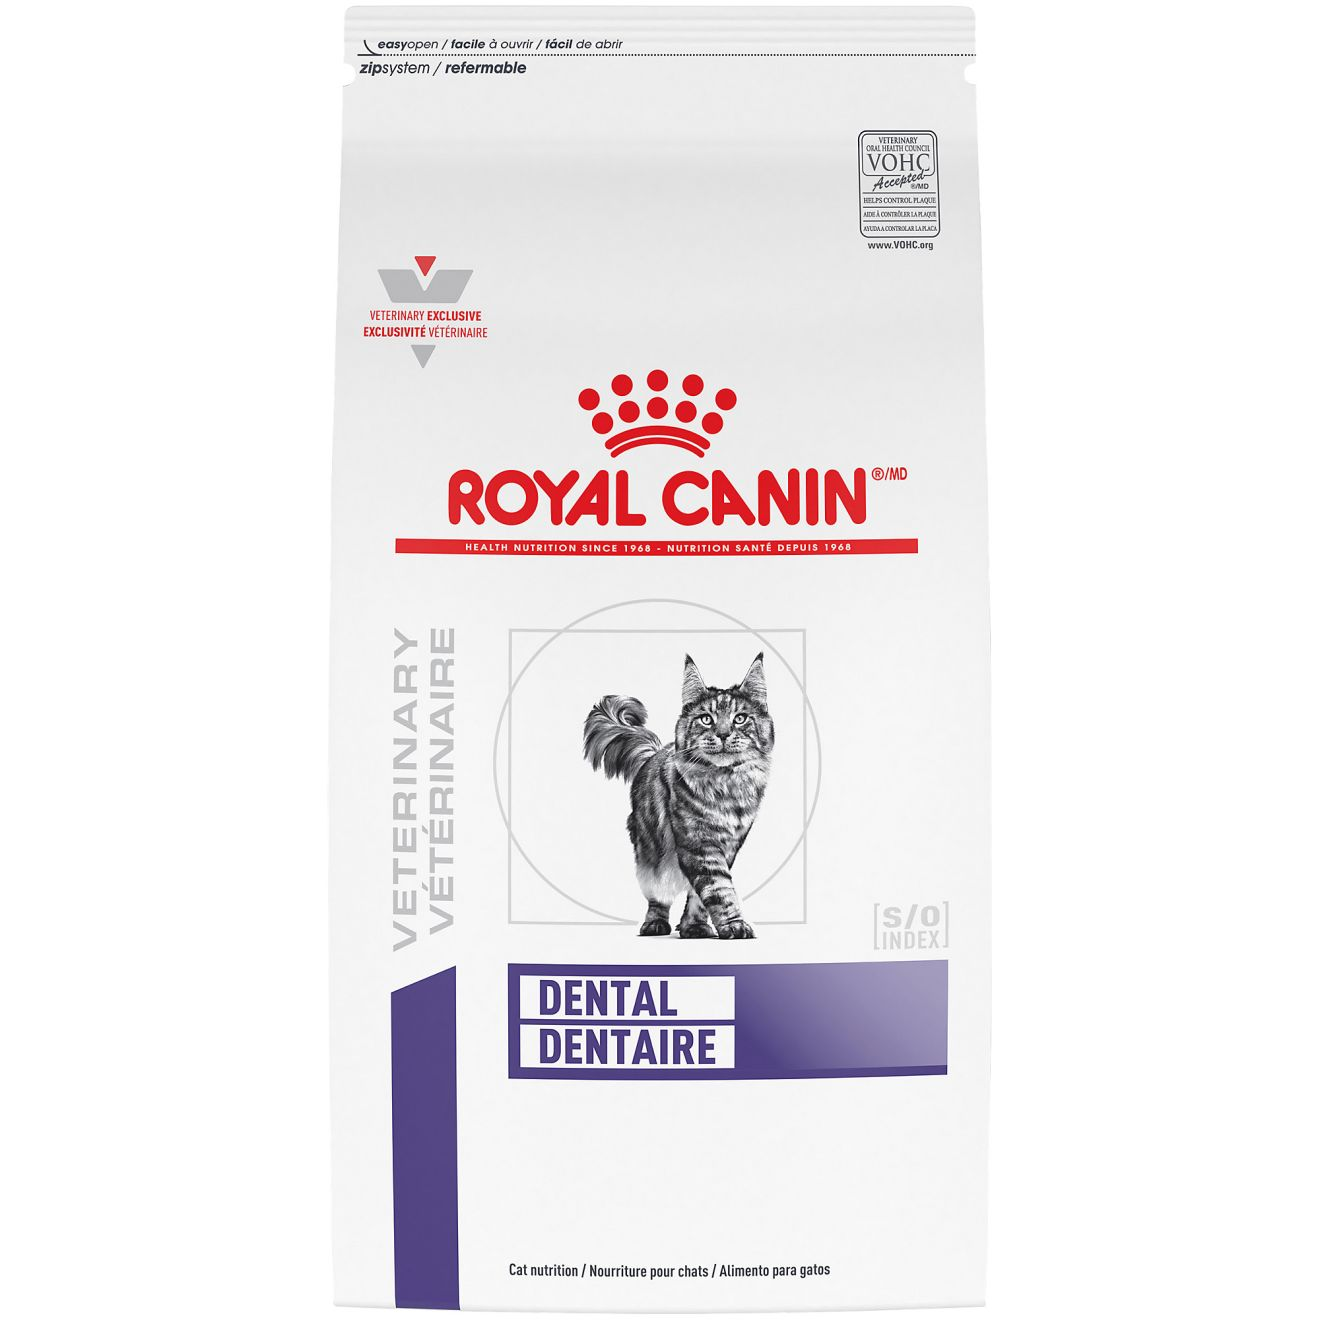 dræne analog bruge Feline Dental | Royal Canin US